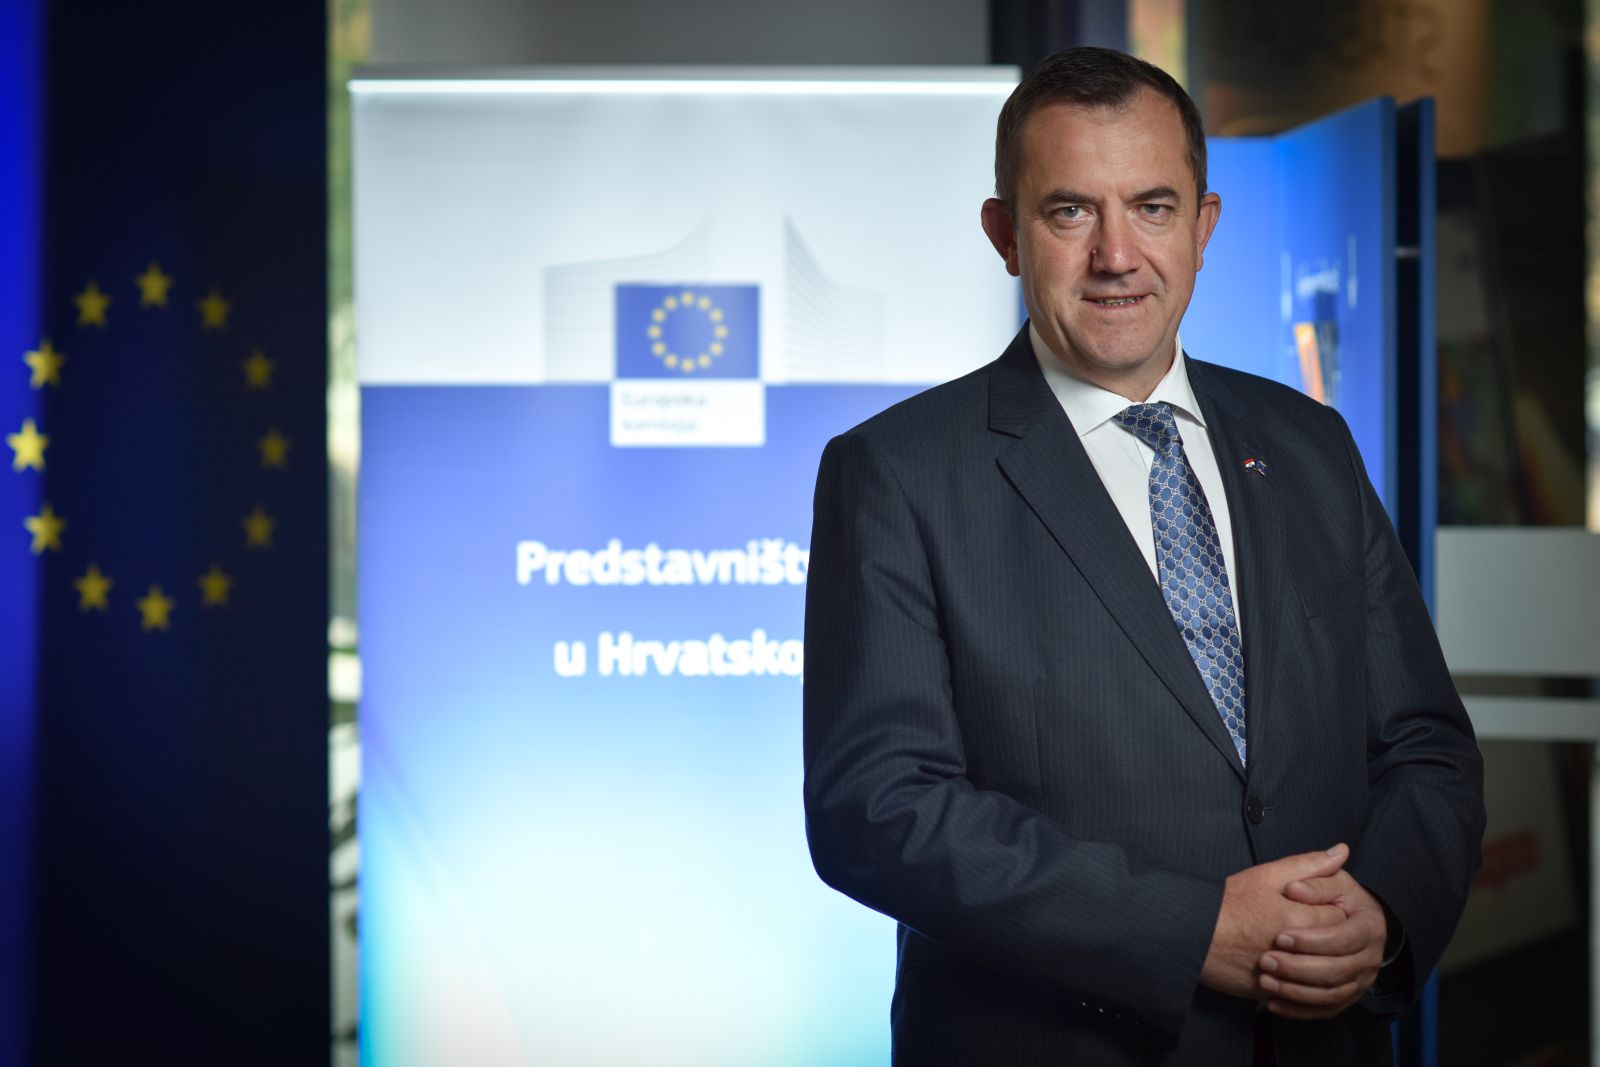 22.09.2022., Zagreb - Ognian Zlatev, voditelj Predstavnistva Europske komisije u Hrvatskoj. 

Photo Sasa ZinajaNFoto